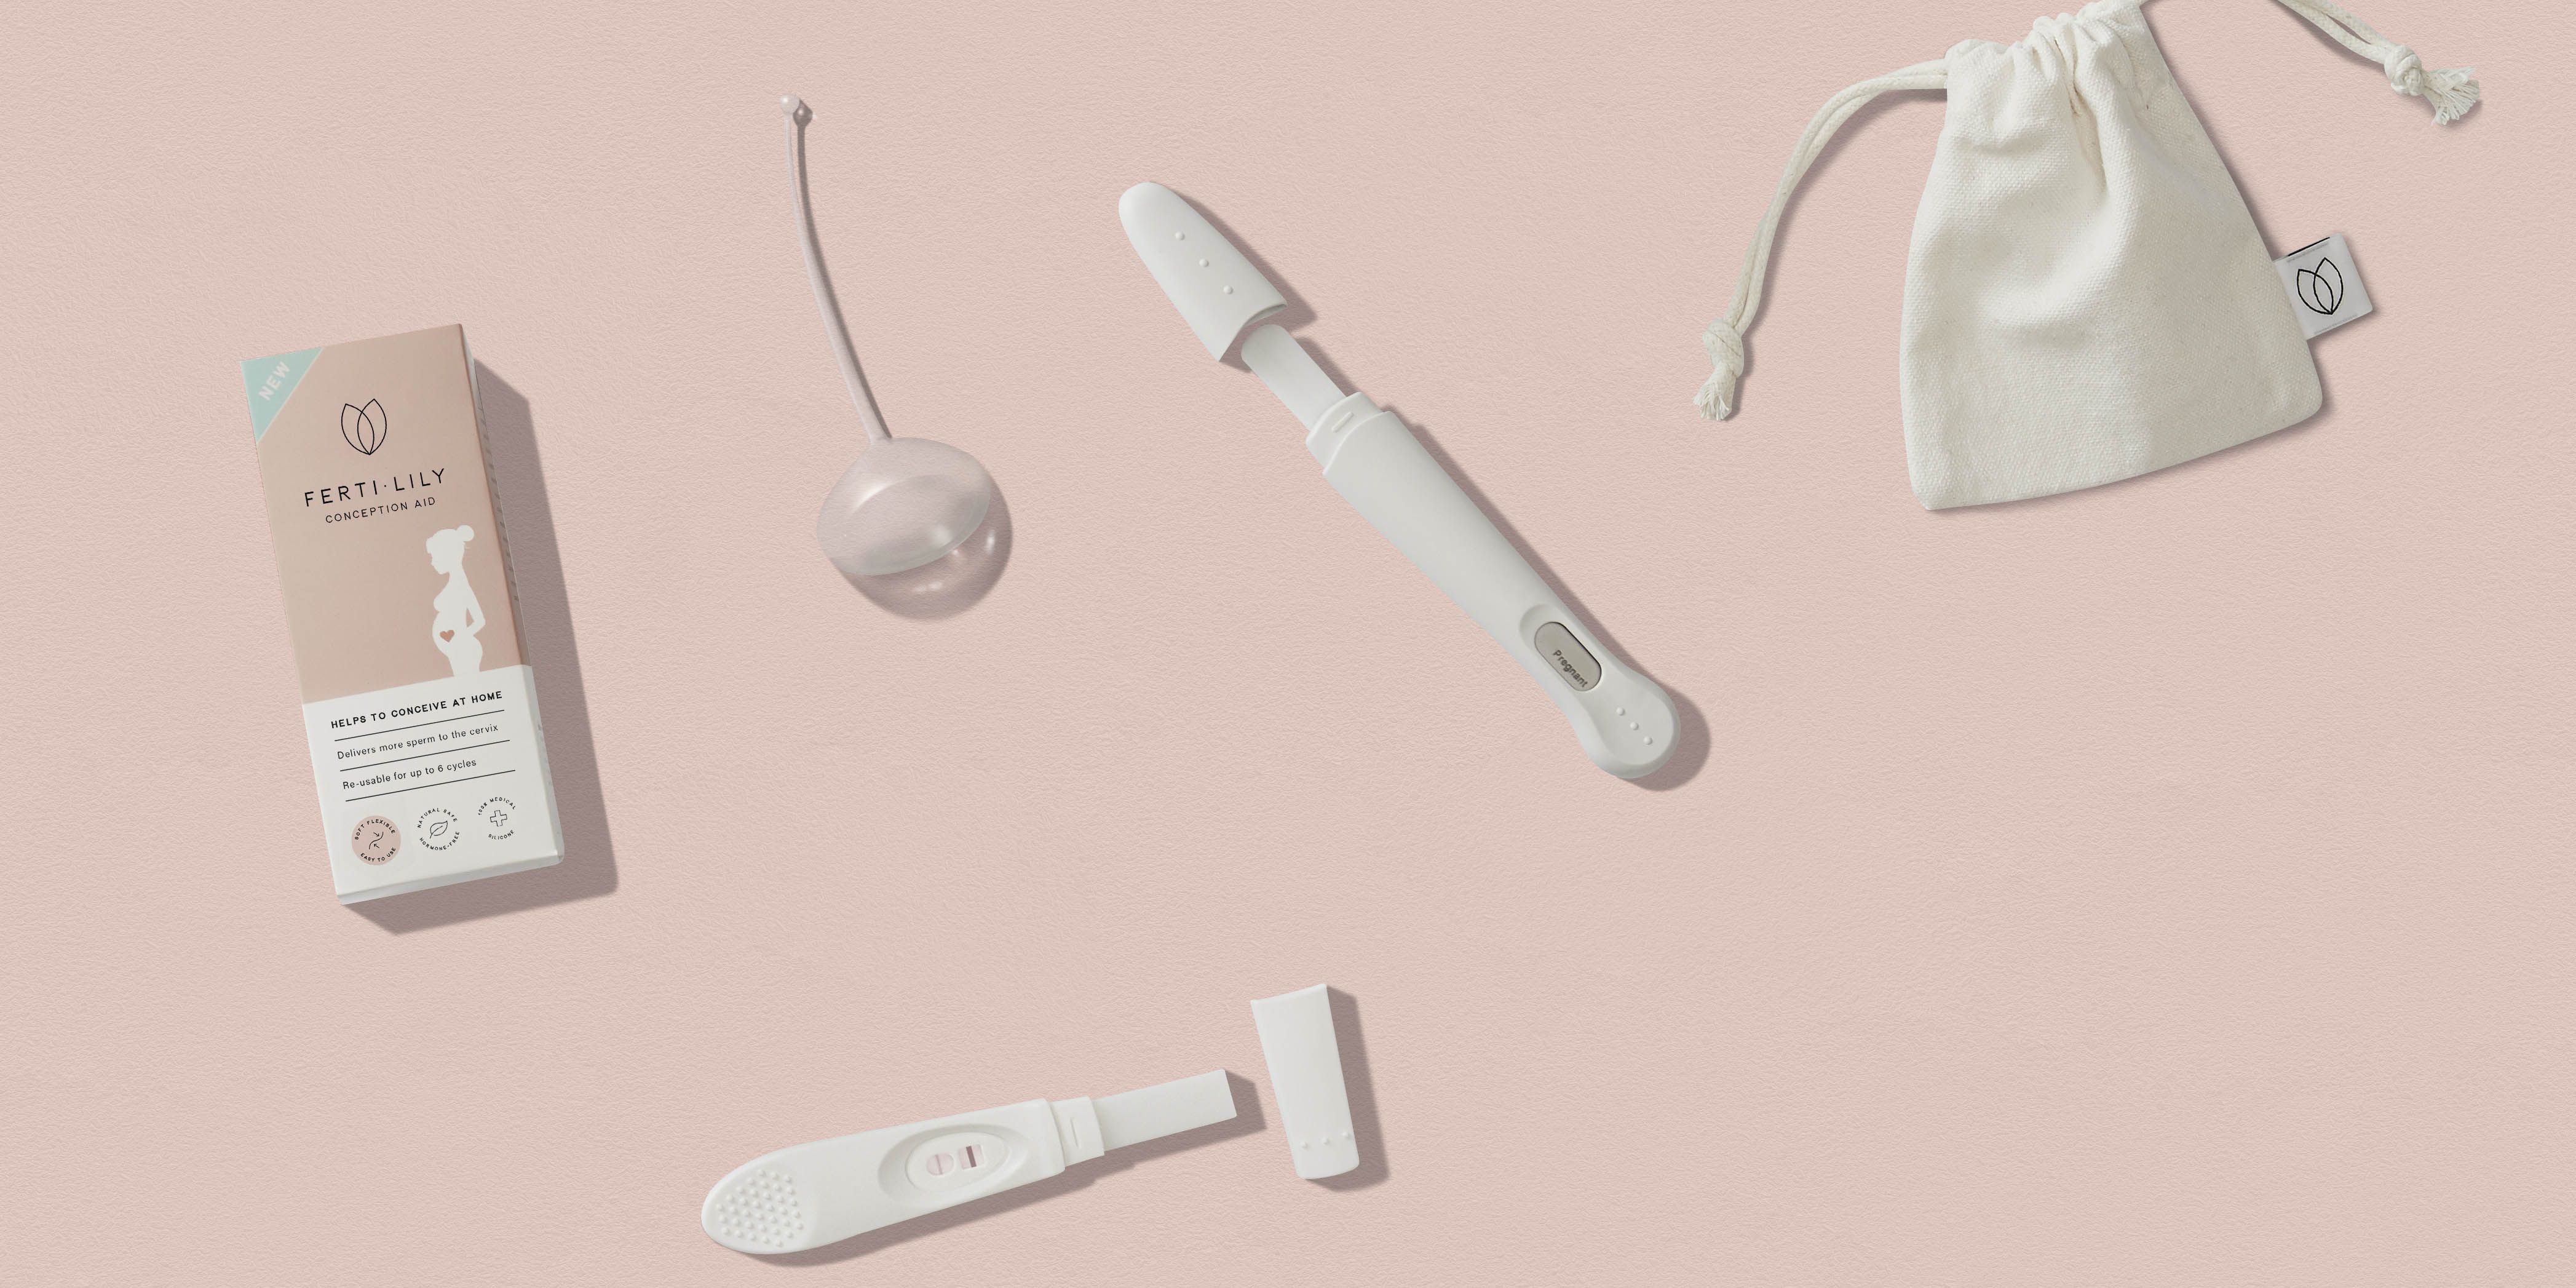 Met deze uitvinding kun je mogelijk sneller zwanger raken